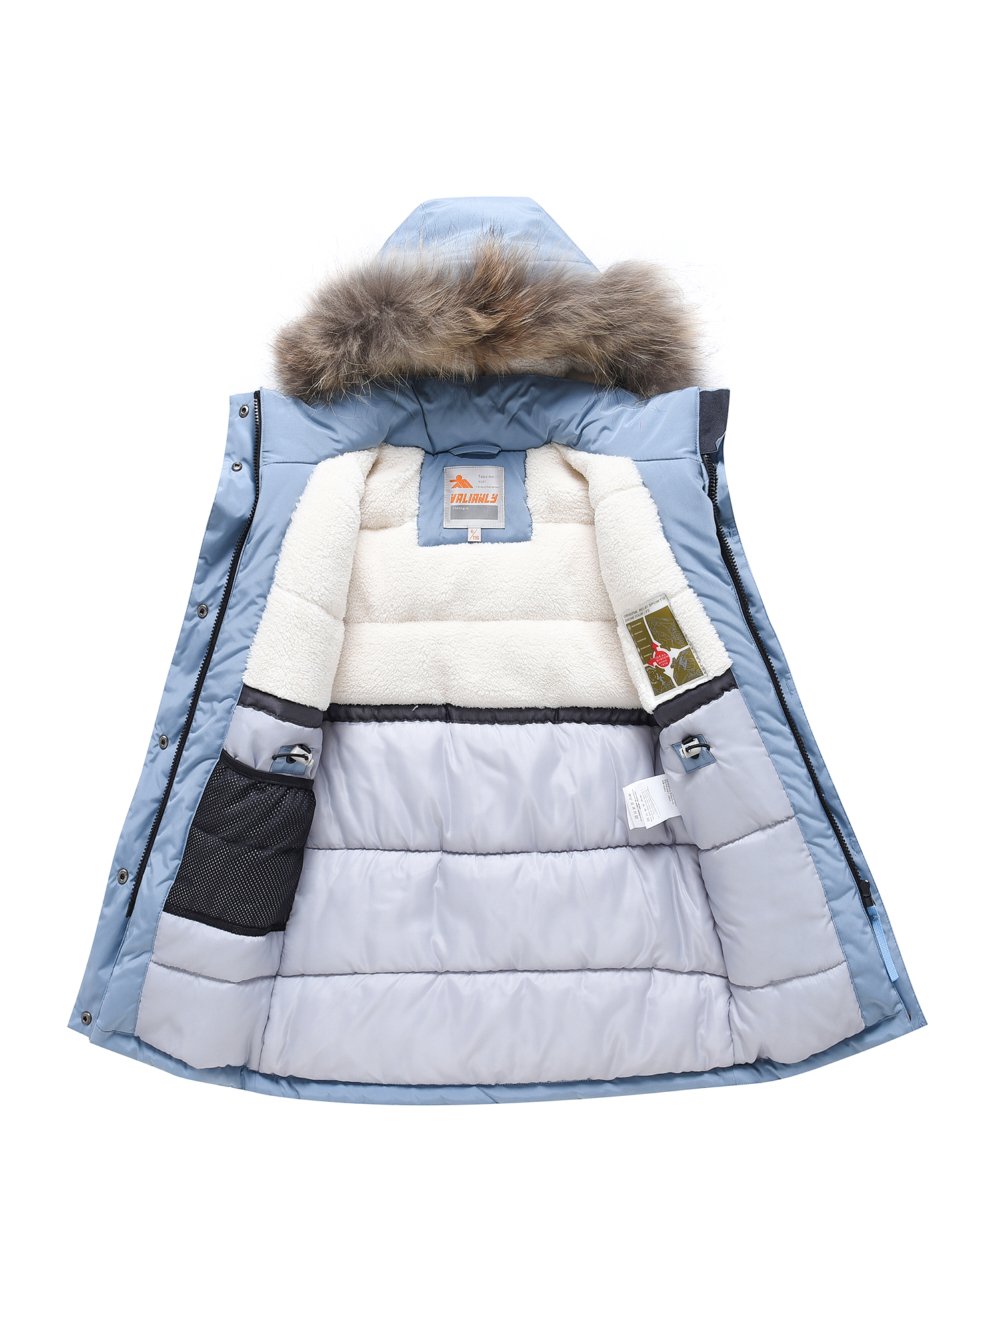 Купить куртку парку для девочки оптом от производителя недорого в Москве 9332Gl 1